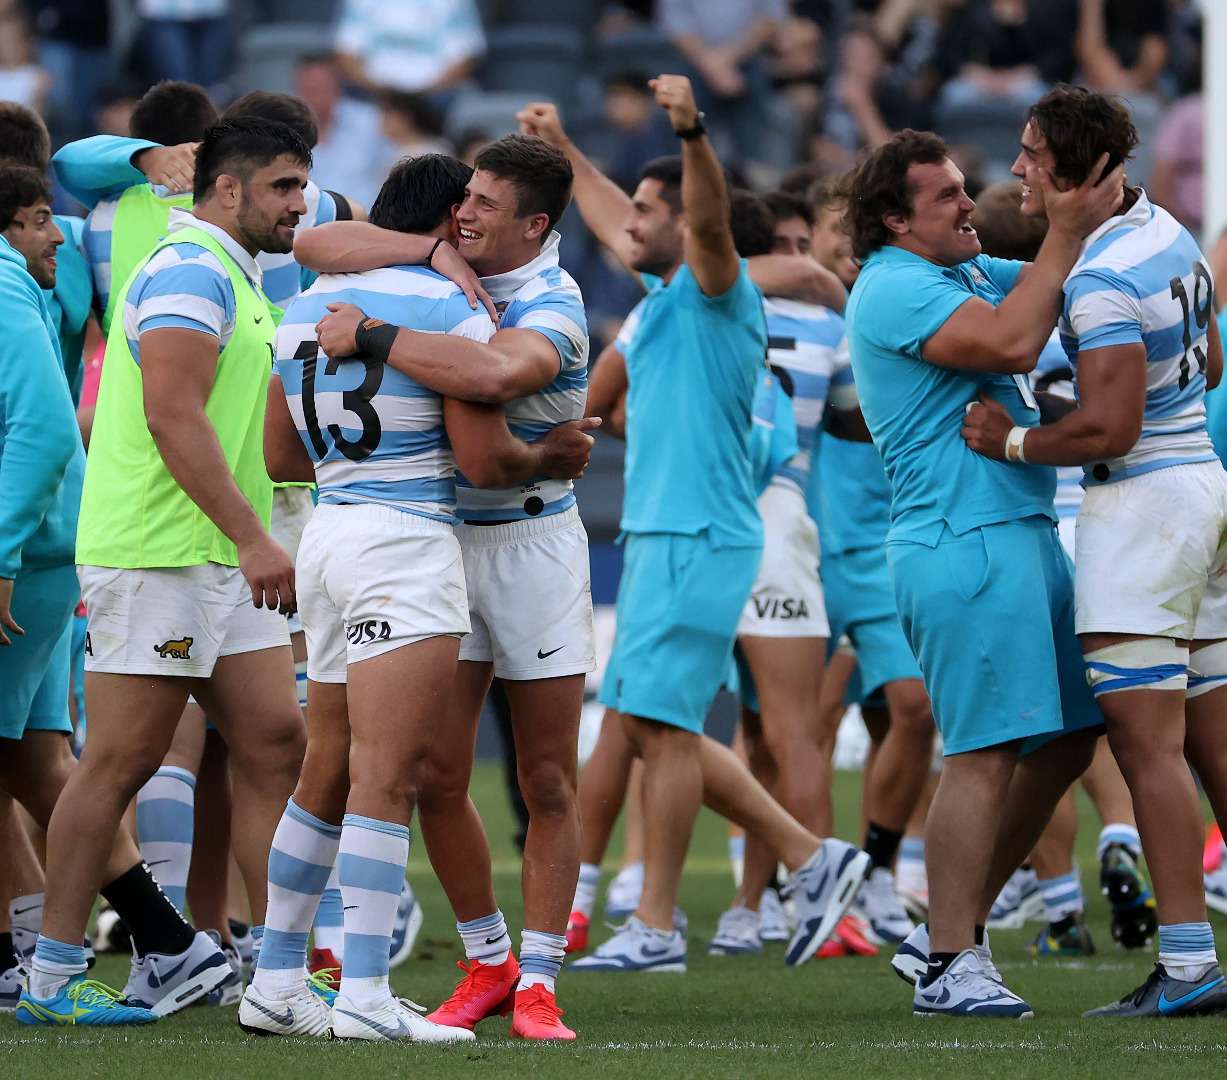 "Fue un triunfo que marca el ADN del rugby argentino", aseguró Hugo Porta